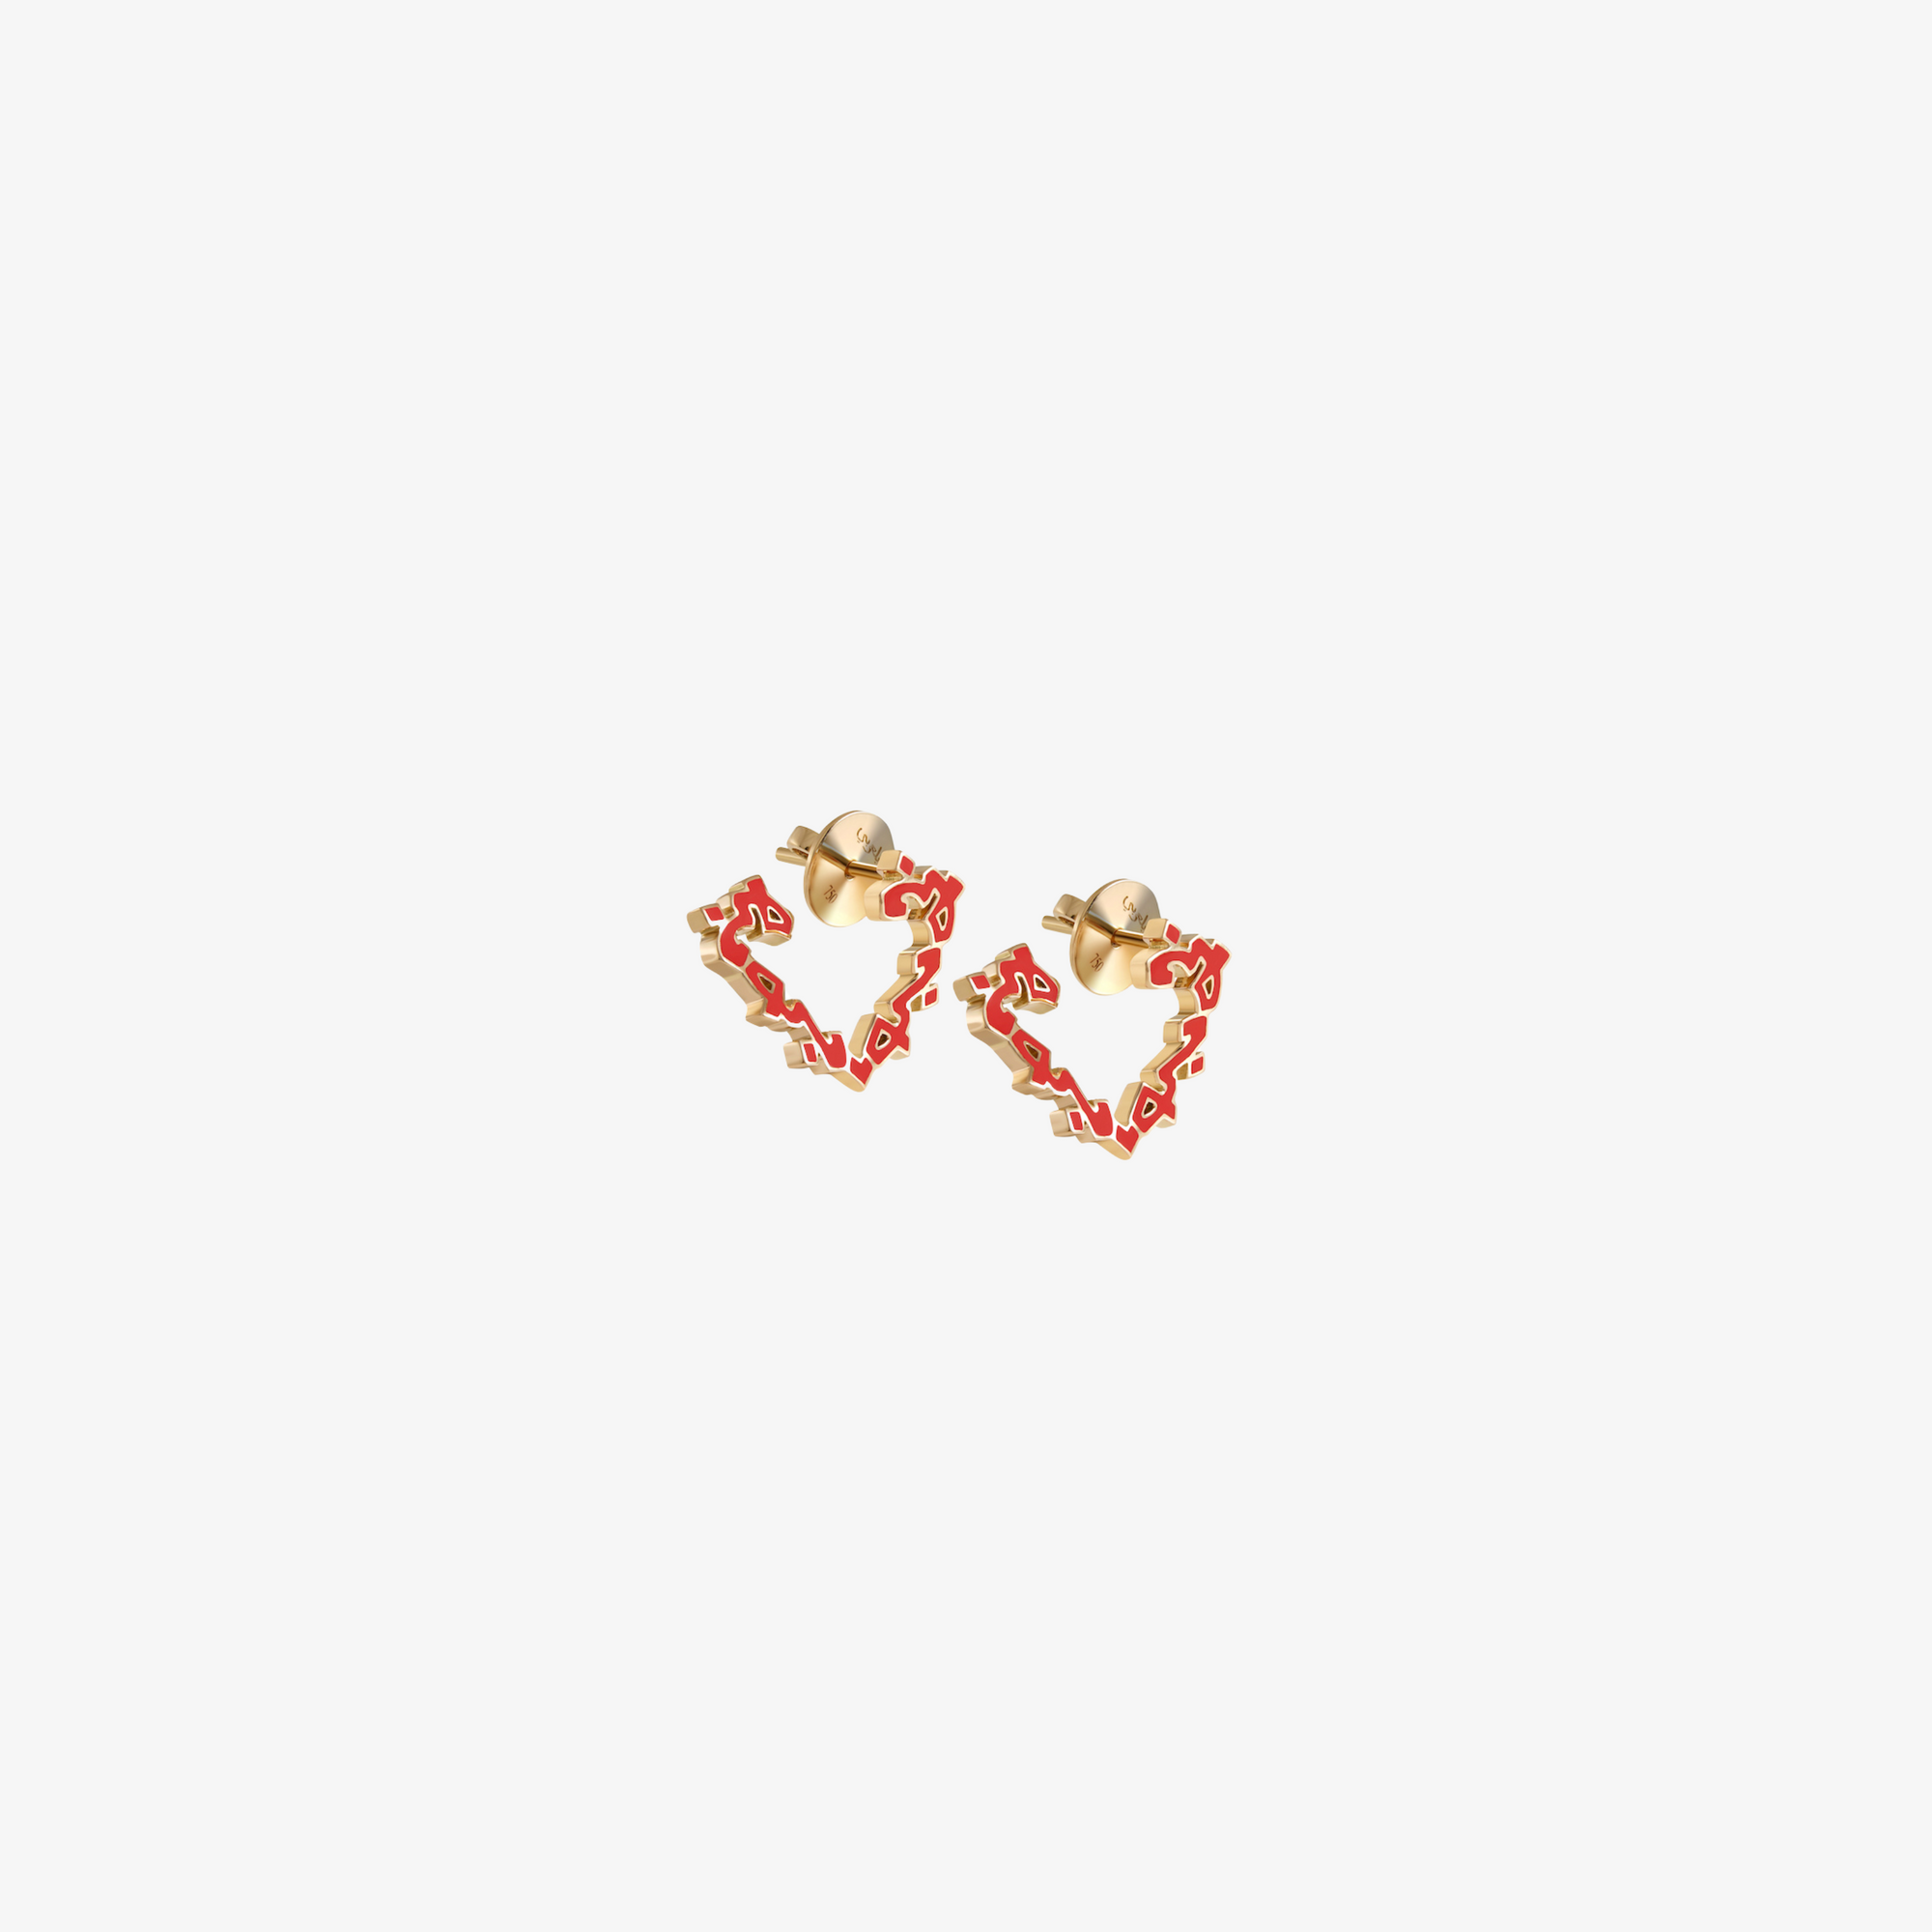 HOBB — 18K Gold & Enamel "Love" Earrings